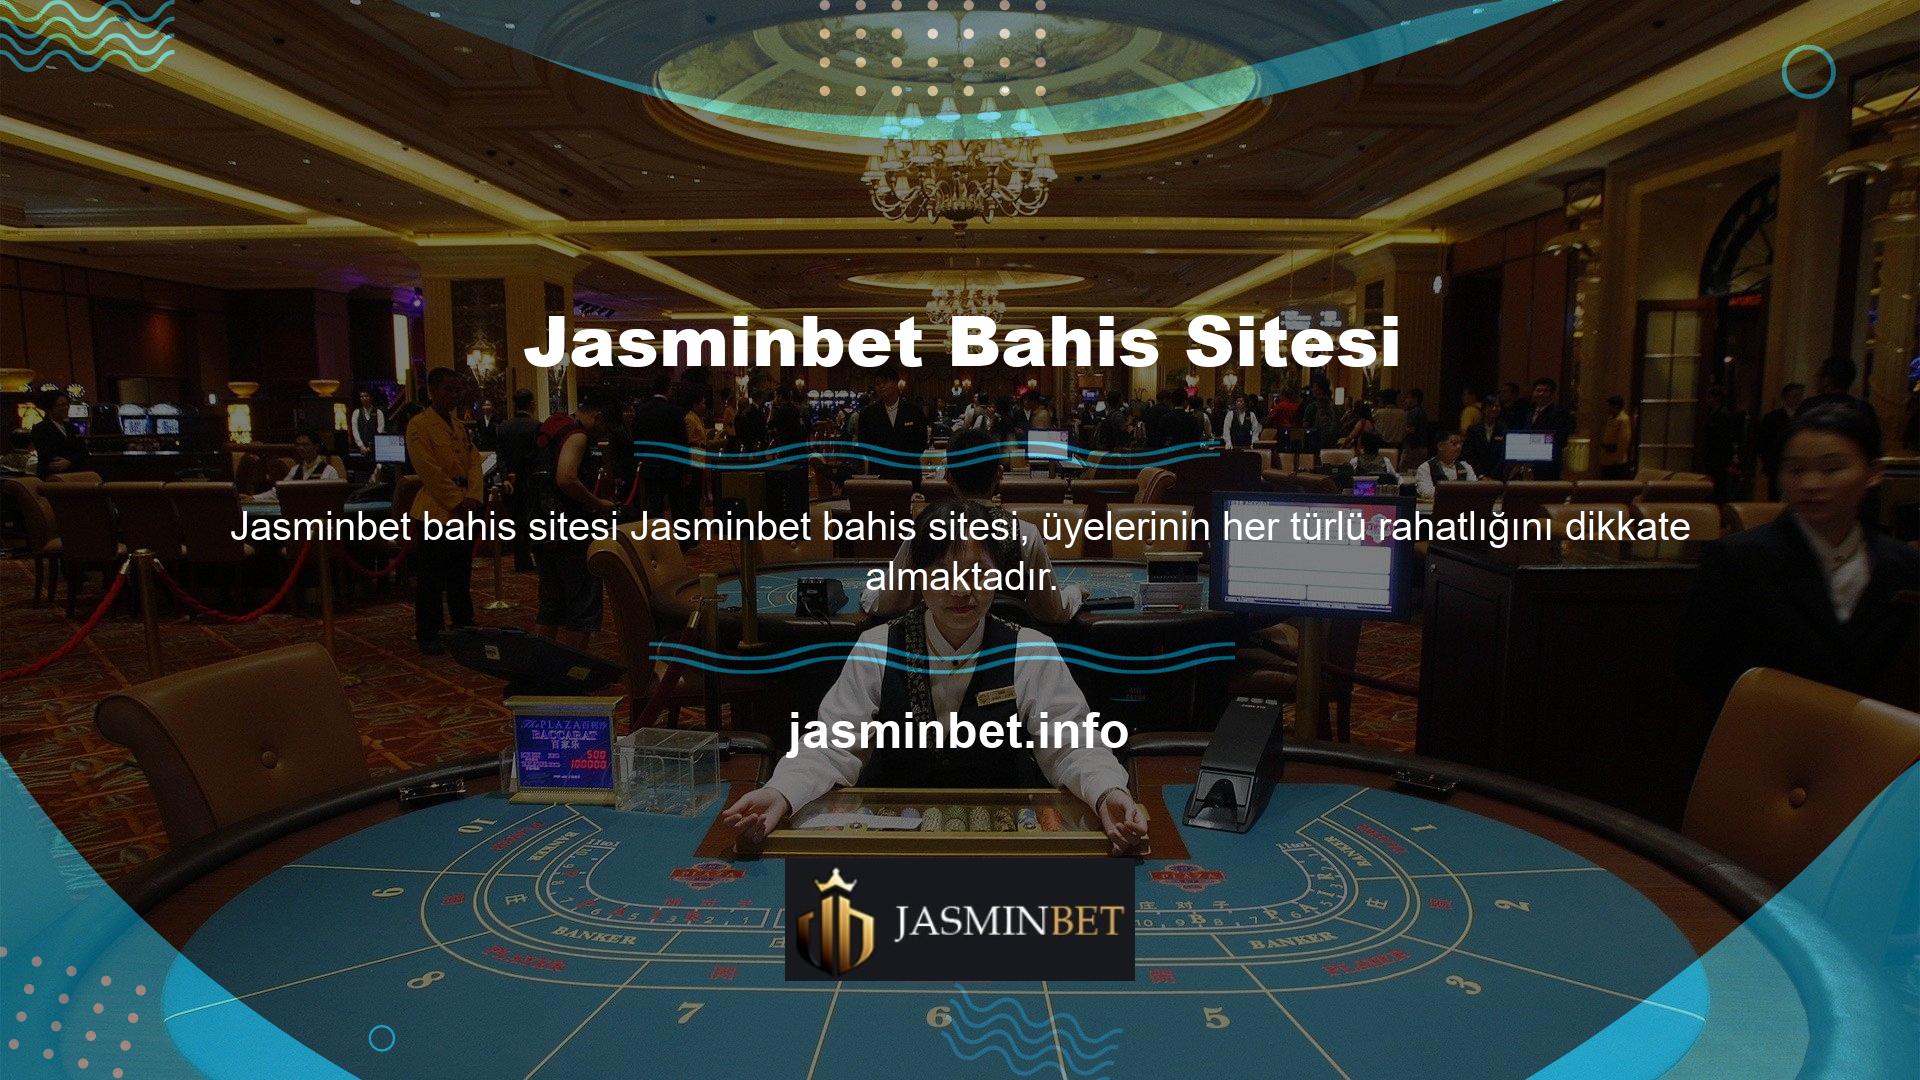 Ayrıca Jasminbet mobil uygulaması ile web sitesine her yerden erişebilirsiniz